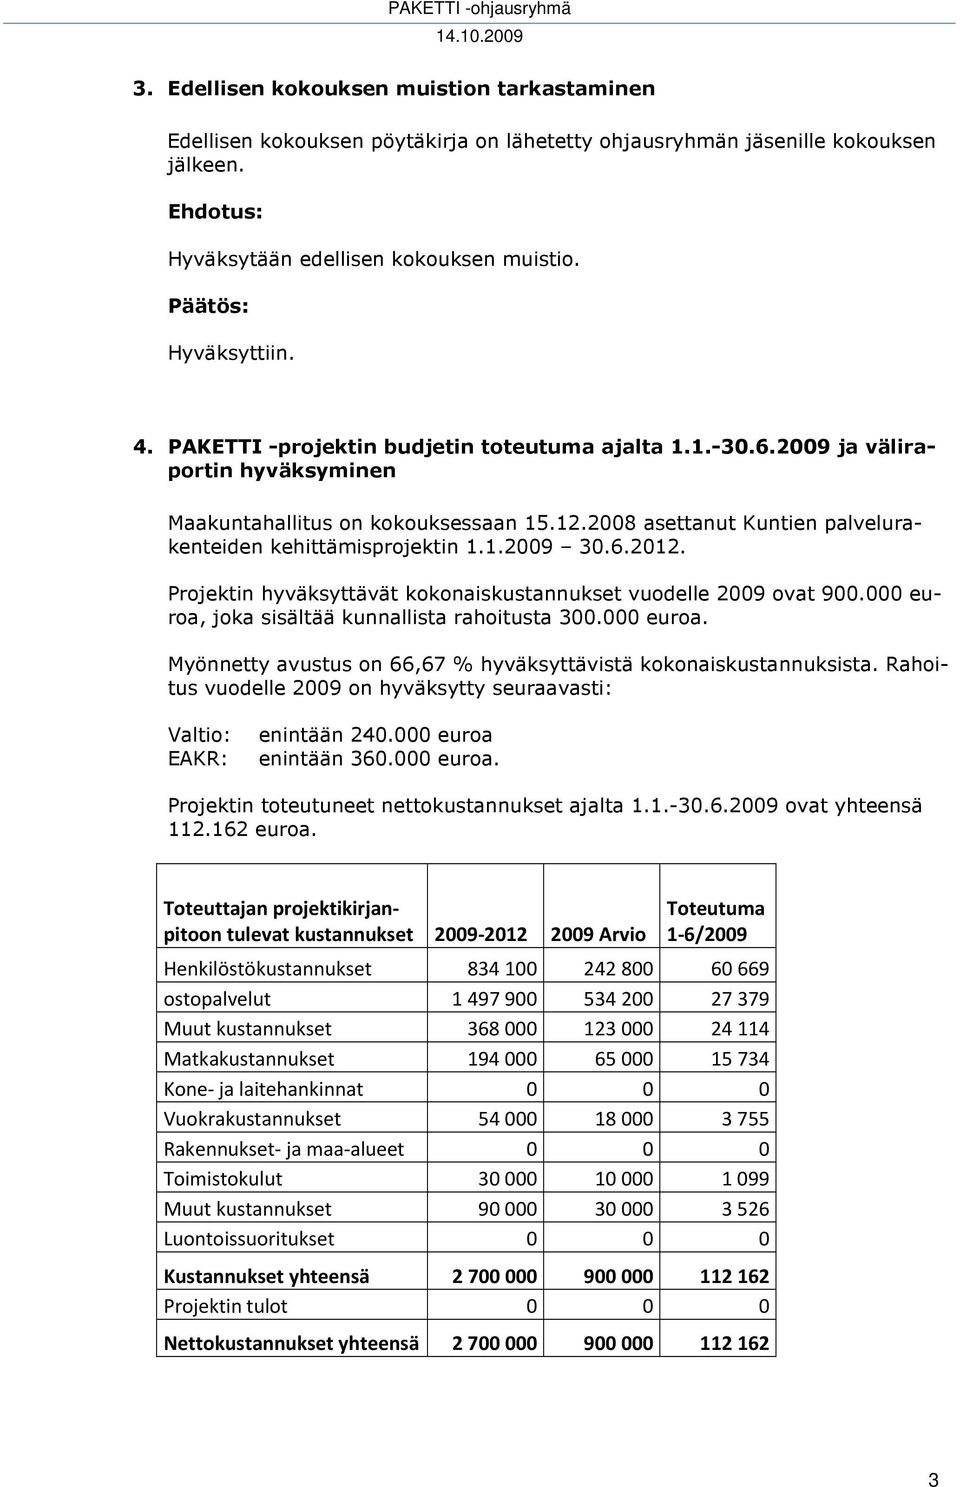 6.2012. Projektin hyväksyttävät kokonaiskustannukset vuodelle 2009 ovat 900.000 euroa, joka sisältää kunnallista rahoitusta 300.000 euroa. Myönnetty avustus on 66,67 % hyväksyttävistä kokonaiskustannuksista.